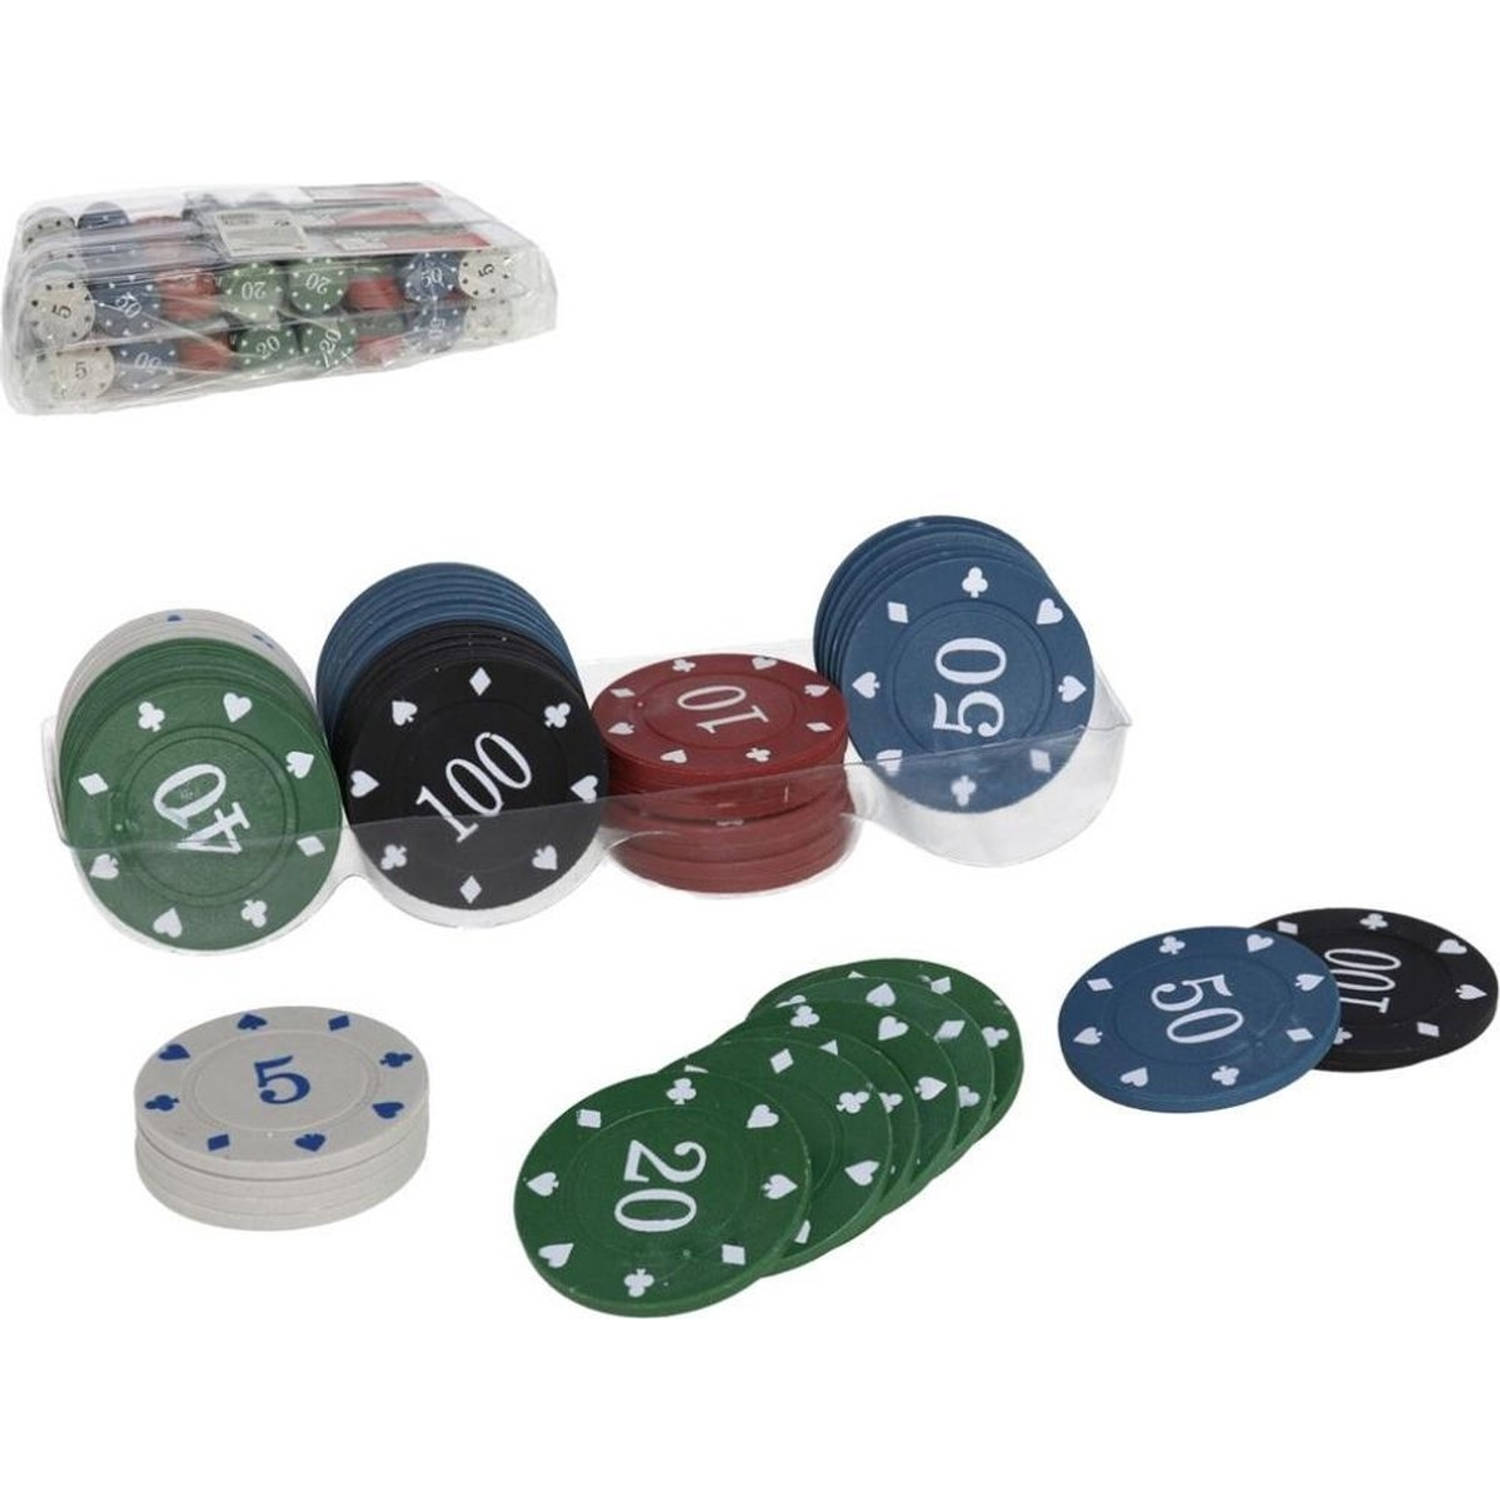 Refrein het kan Cusco Poker chips - Pokerset - 96 pc Poker chips - Poker set / Poker / kaartspel  / pokerspel / pokeren / casino / Pokerchips | Blokker